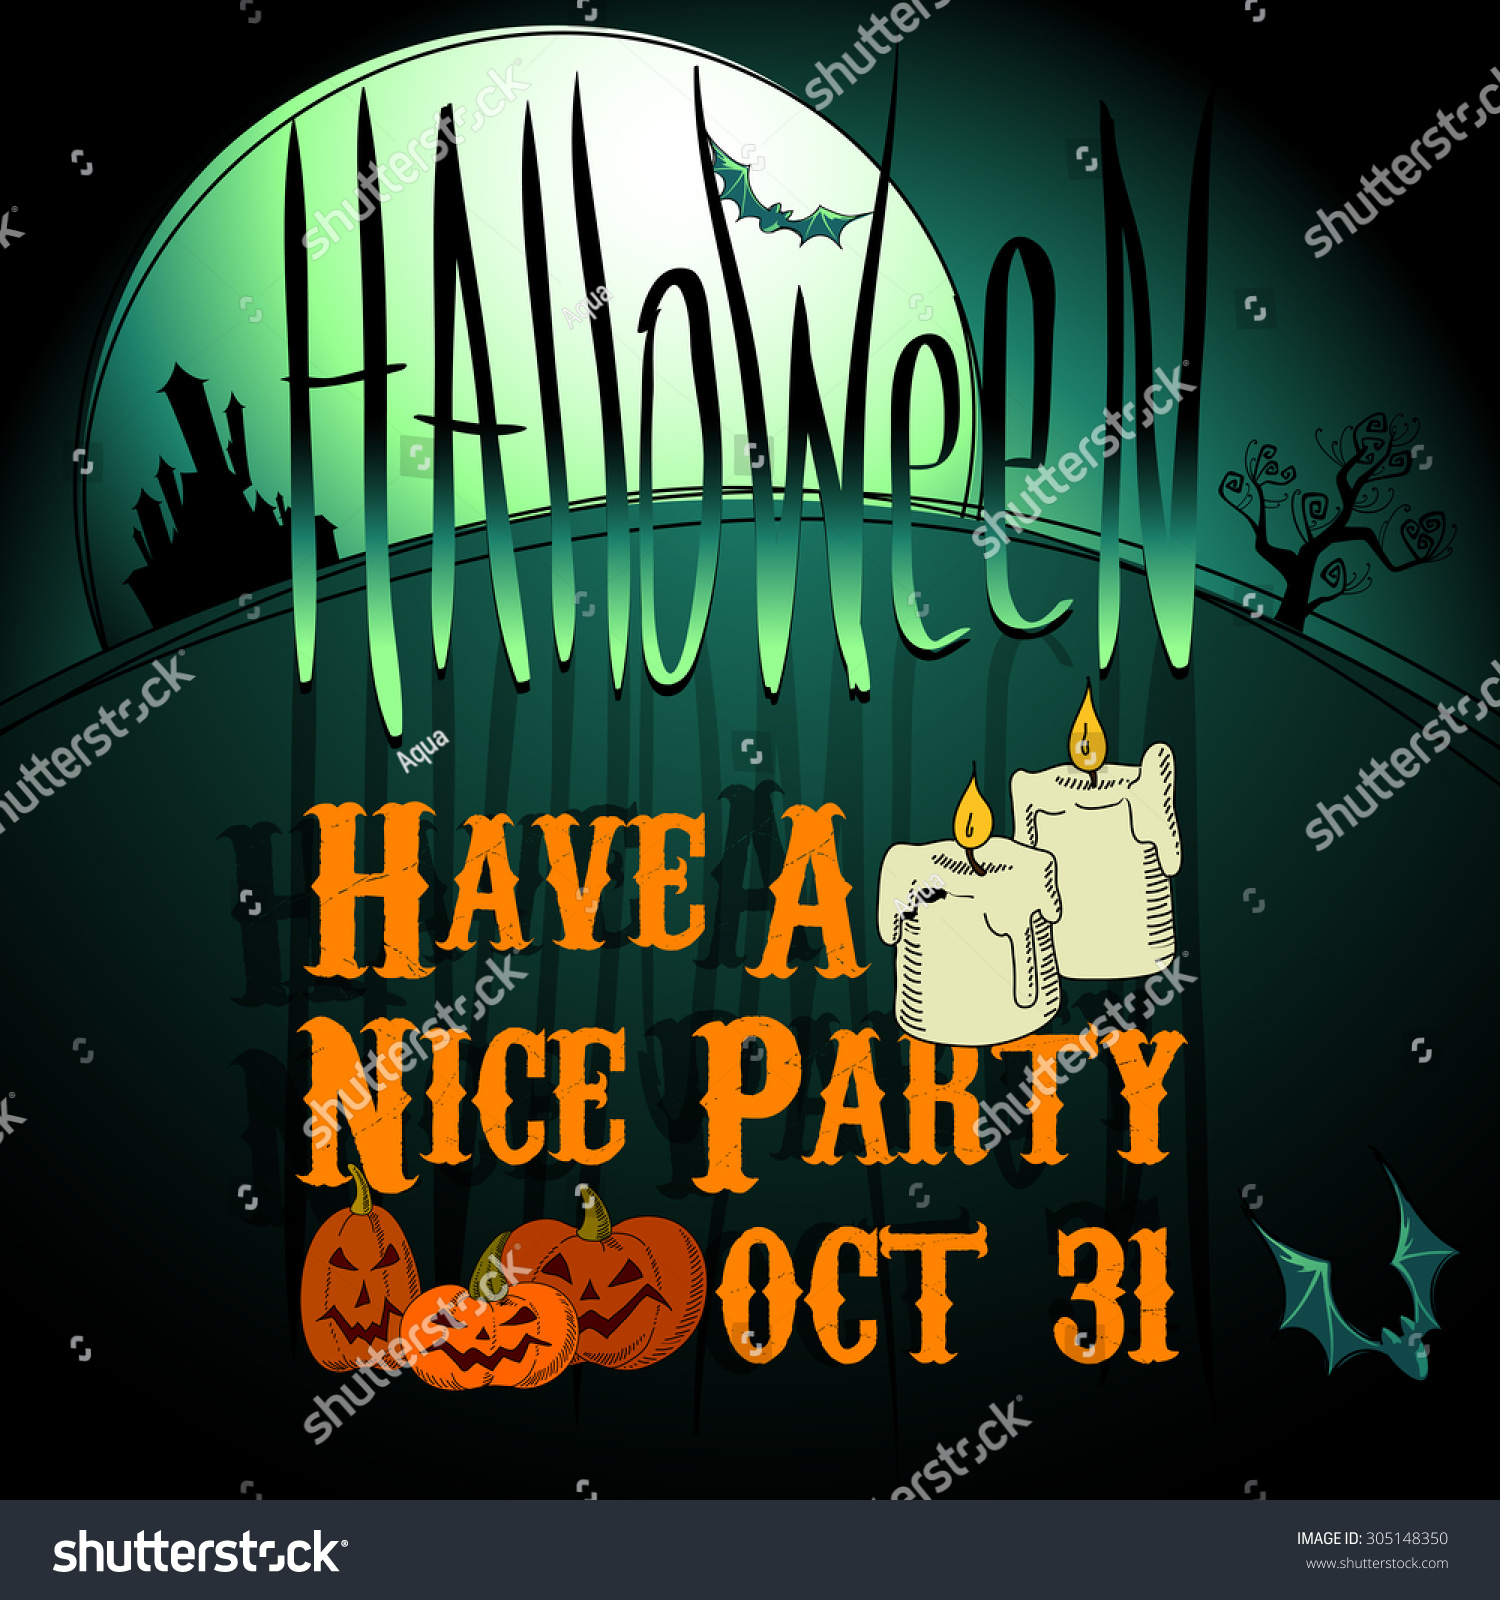 Edit Vectors Free Online - Halloween background | Shutterstock Editor